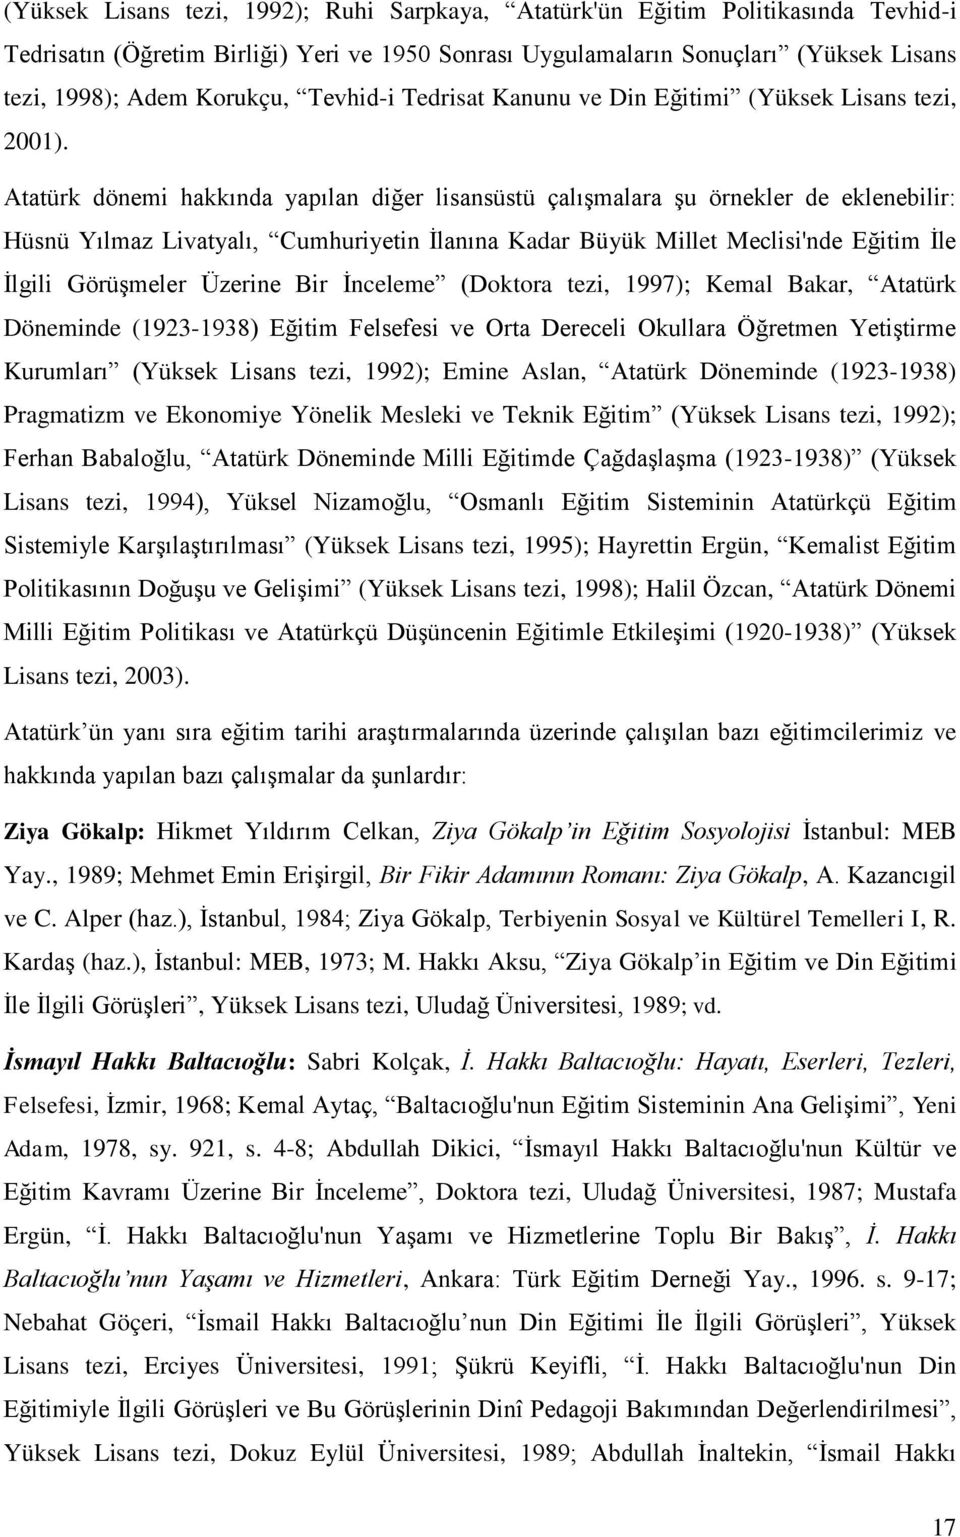 Atatürk dönemi hakkında yapılan diğer lisansüstü çalışmalara şu örnekler de eklenebilir: Hüsnü Yılmaz Livatyalı, Cumhuriyetin İlanına Kadar Büyük Millet Meclisi'nde Eğitim İle İlgili Görüşmeler